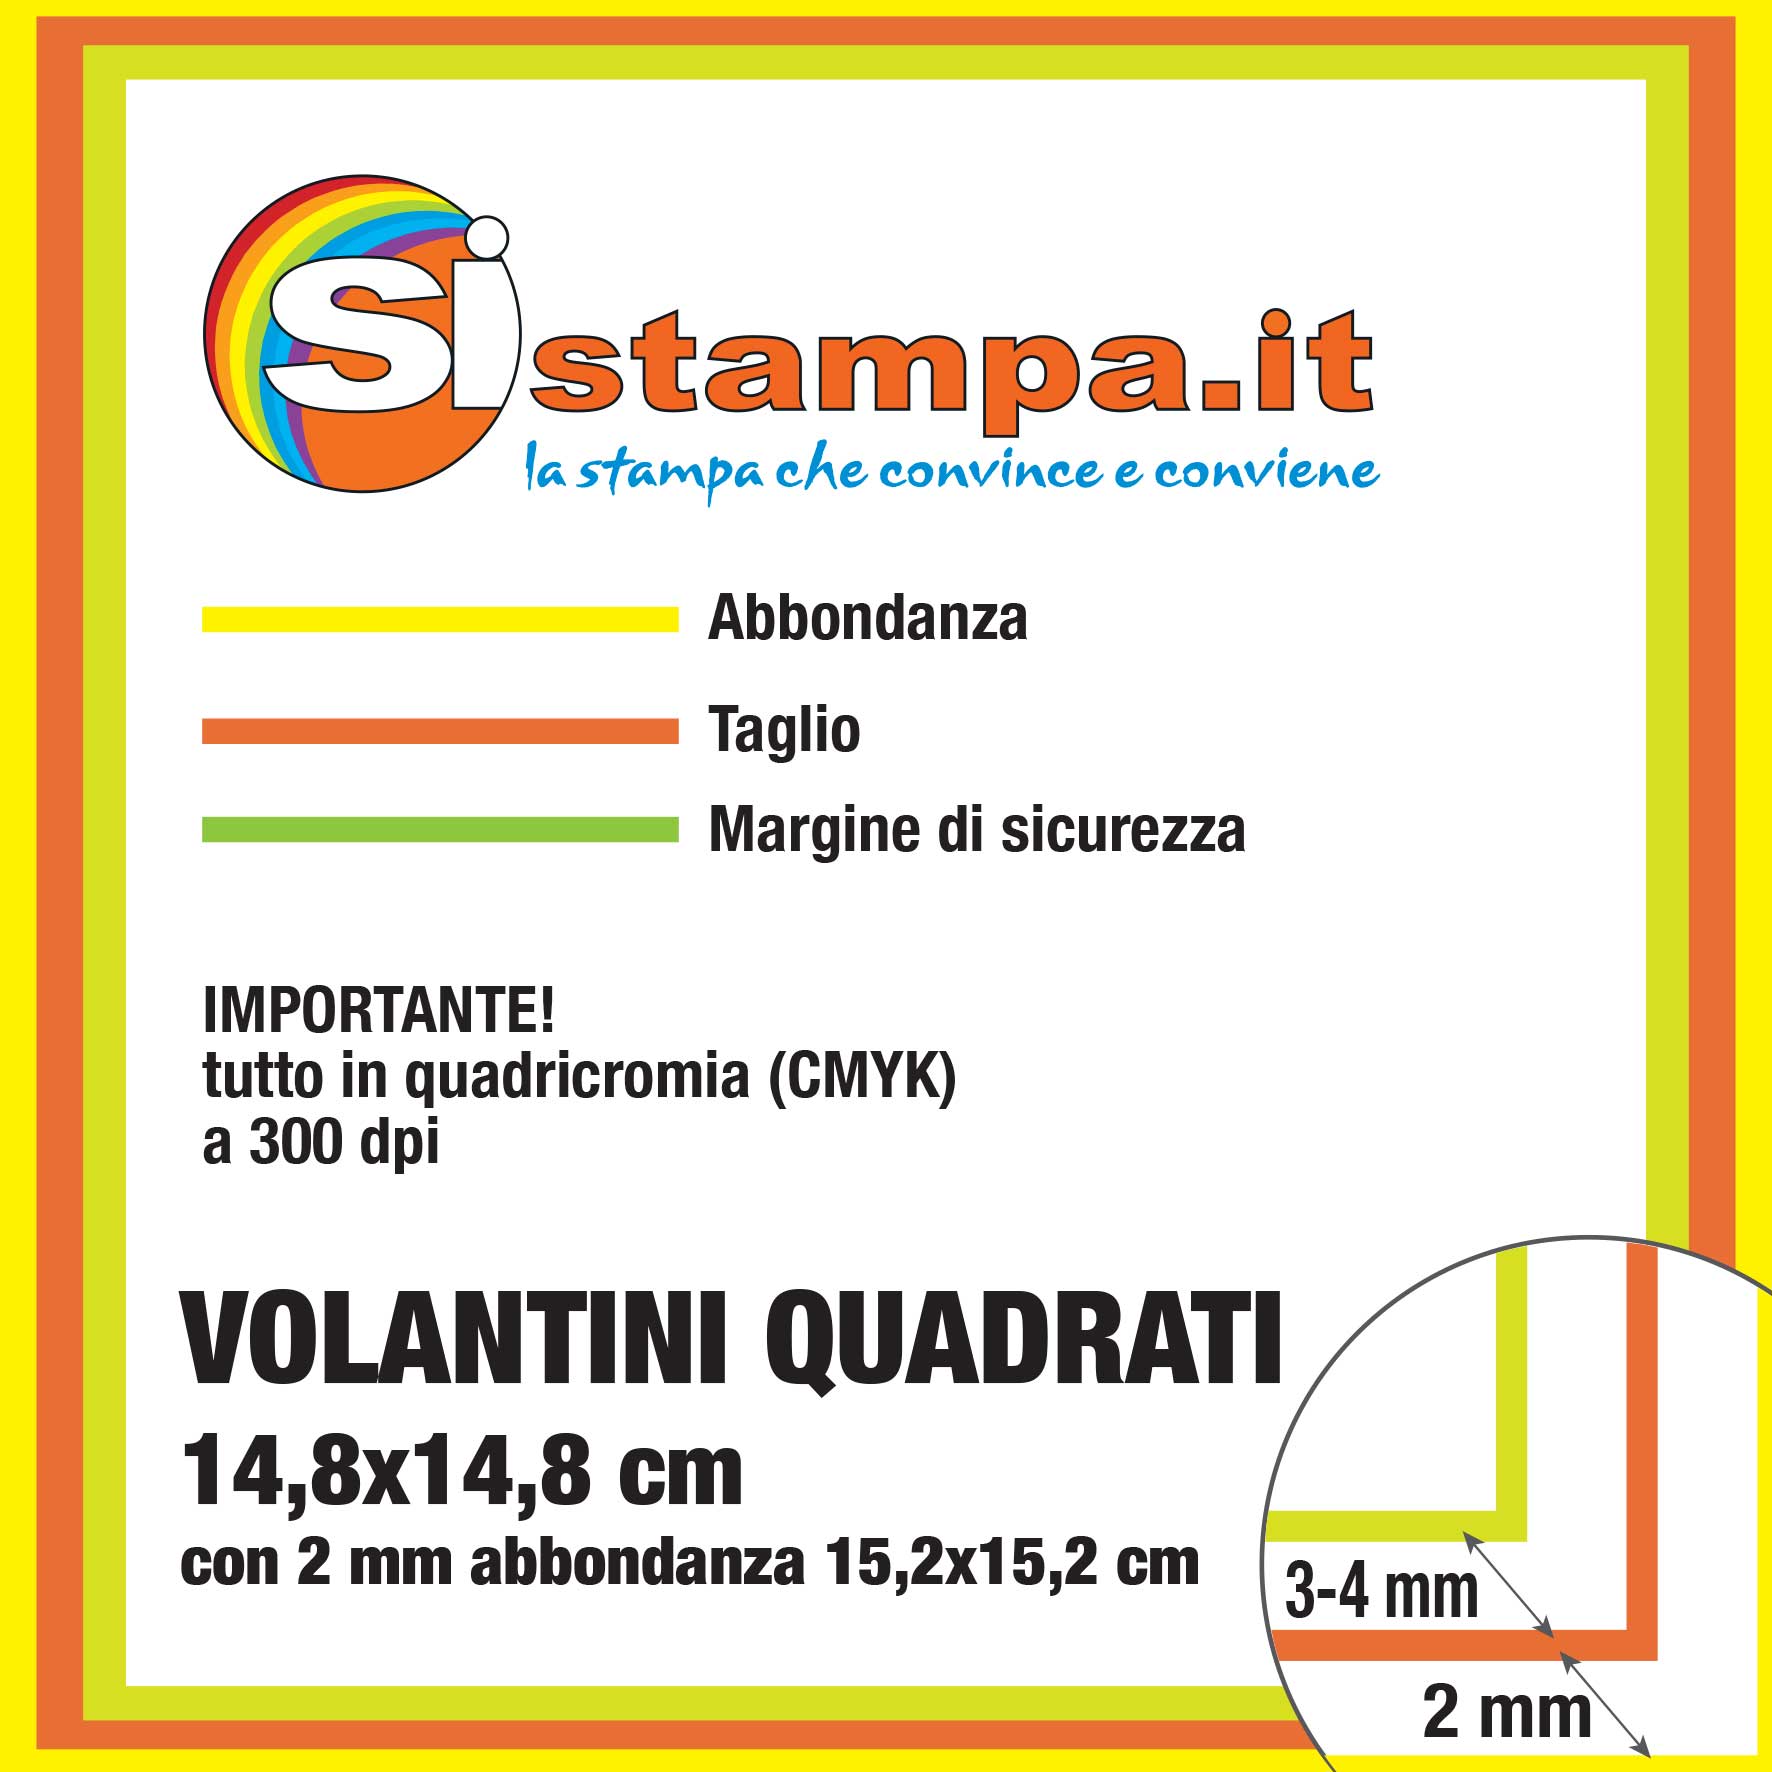 Preparazione Stampa Volantini Quadrati 14,8x14,8 | SISTAMPA